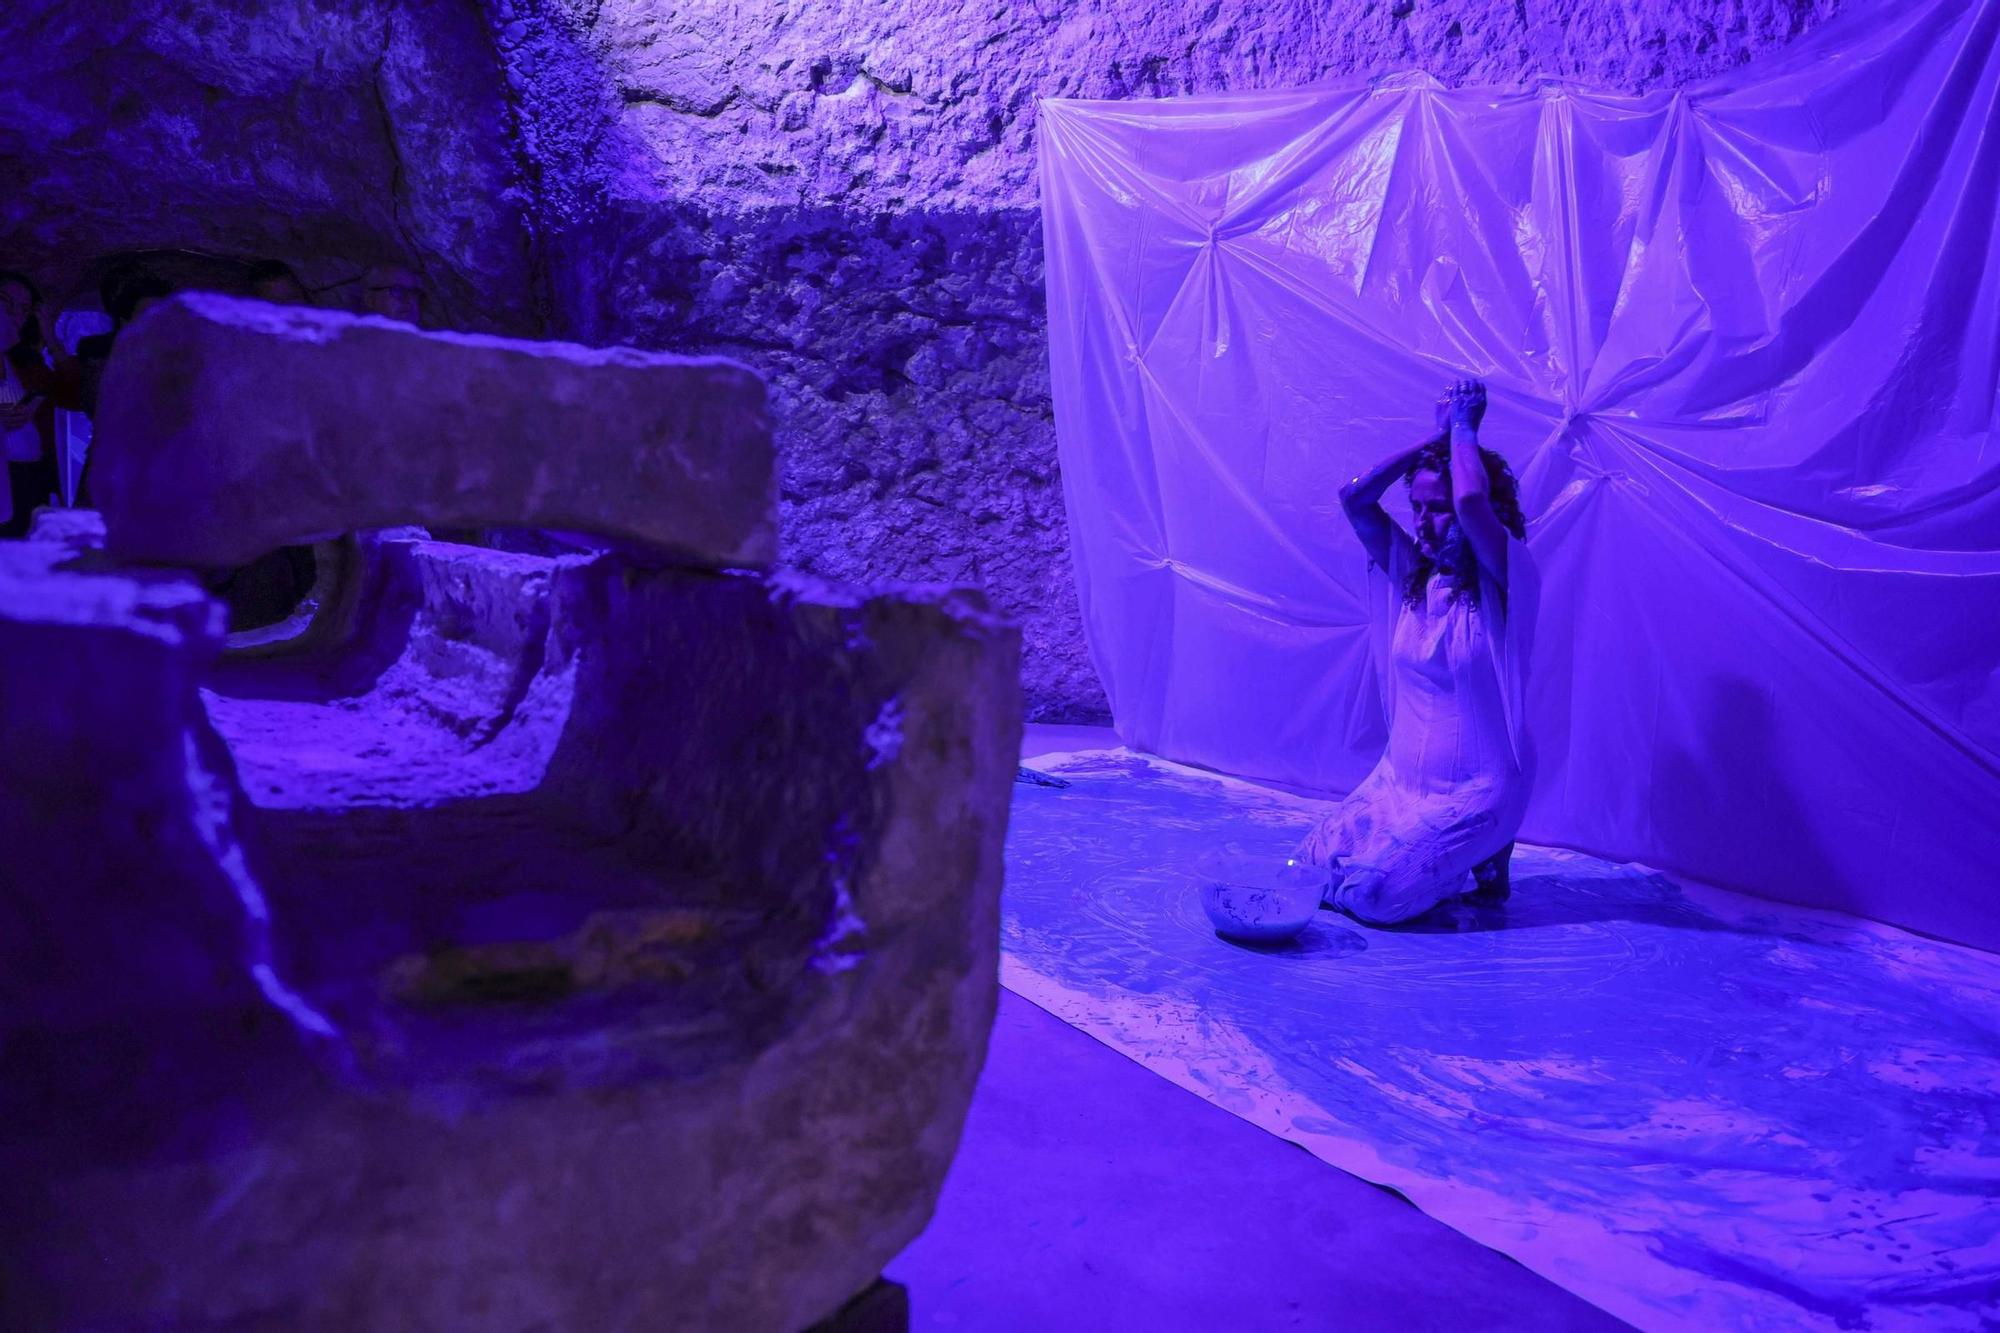 La artista costarricense Karla Solano instala "Origen" en la nueva sala multimedia del Museo de Aguas de Alicante